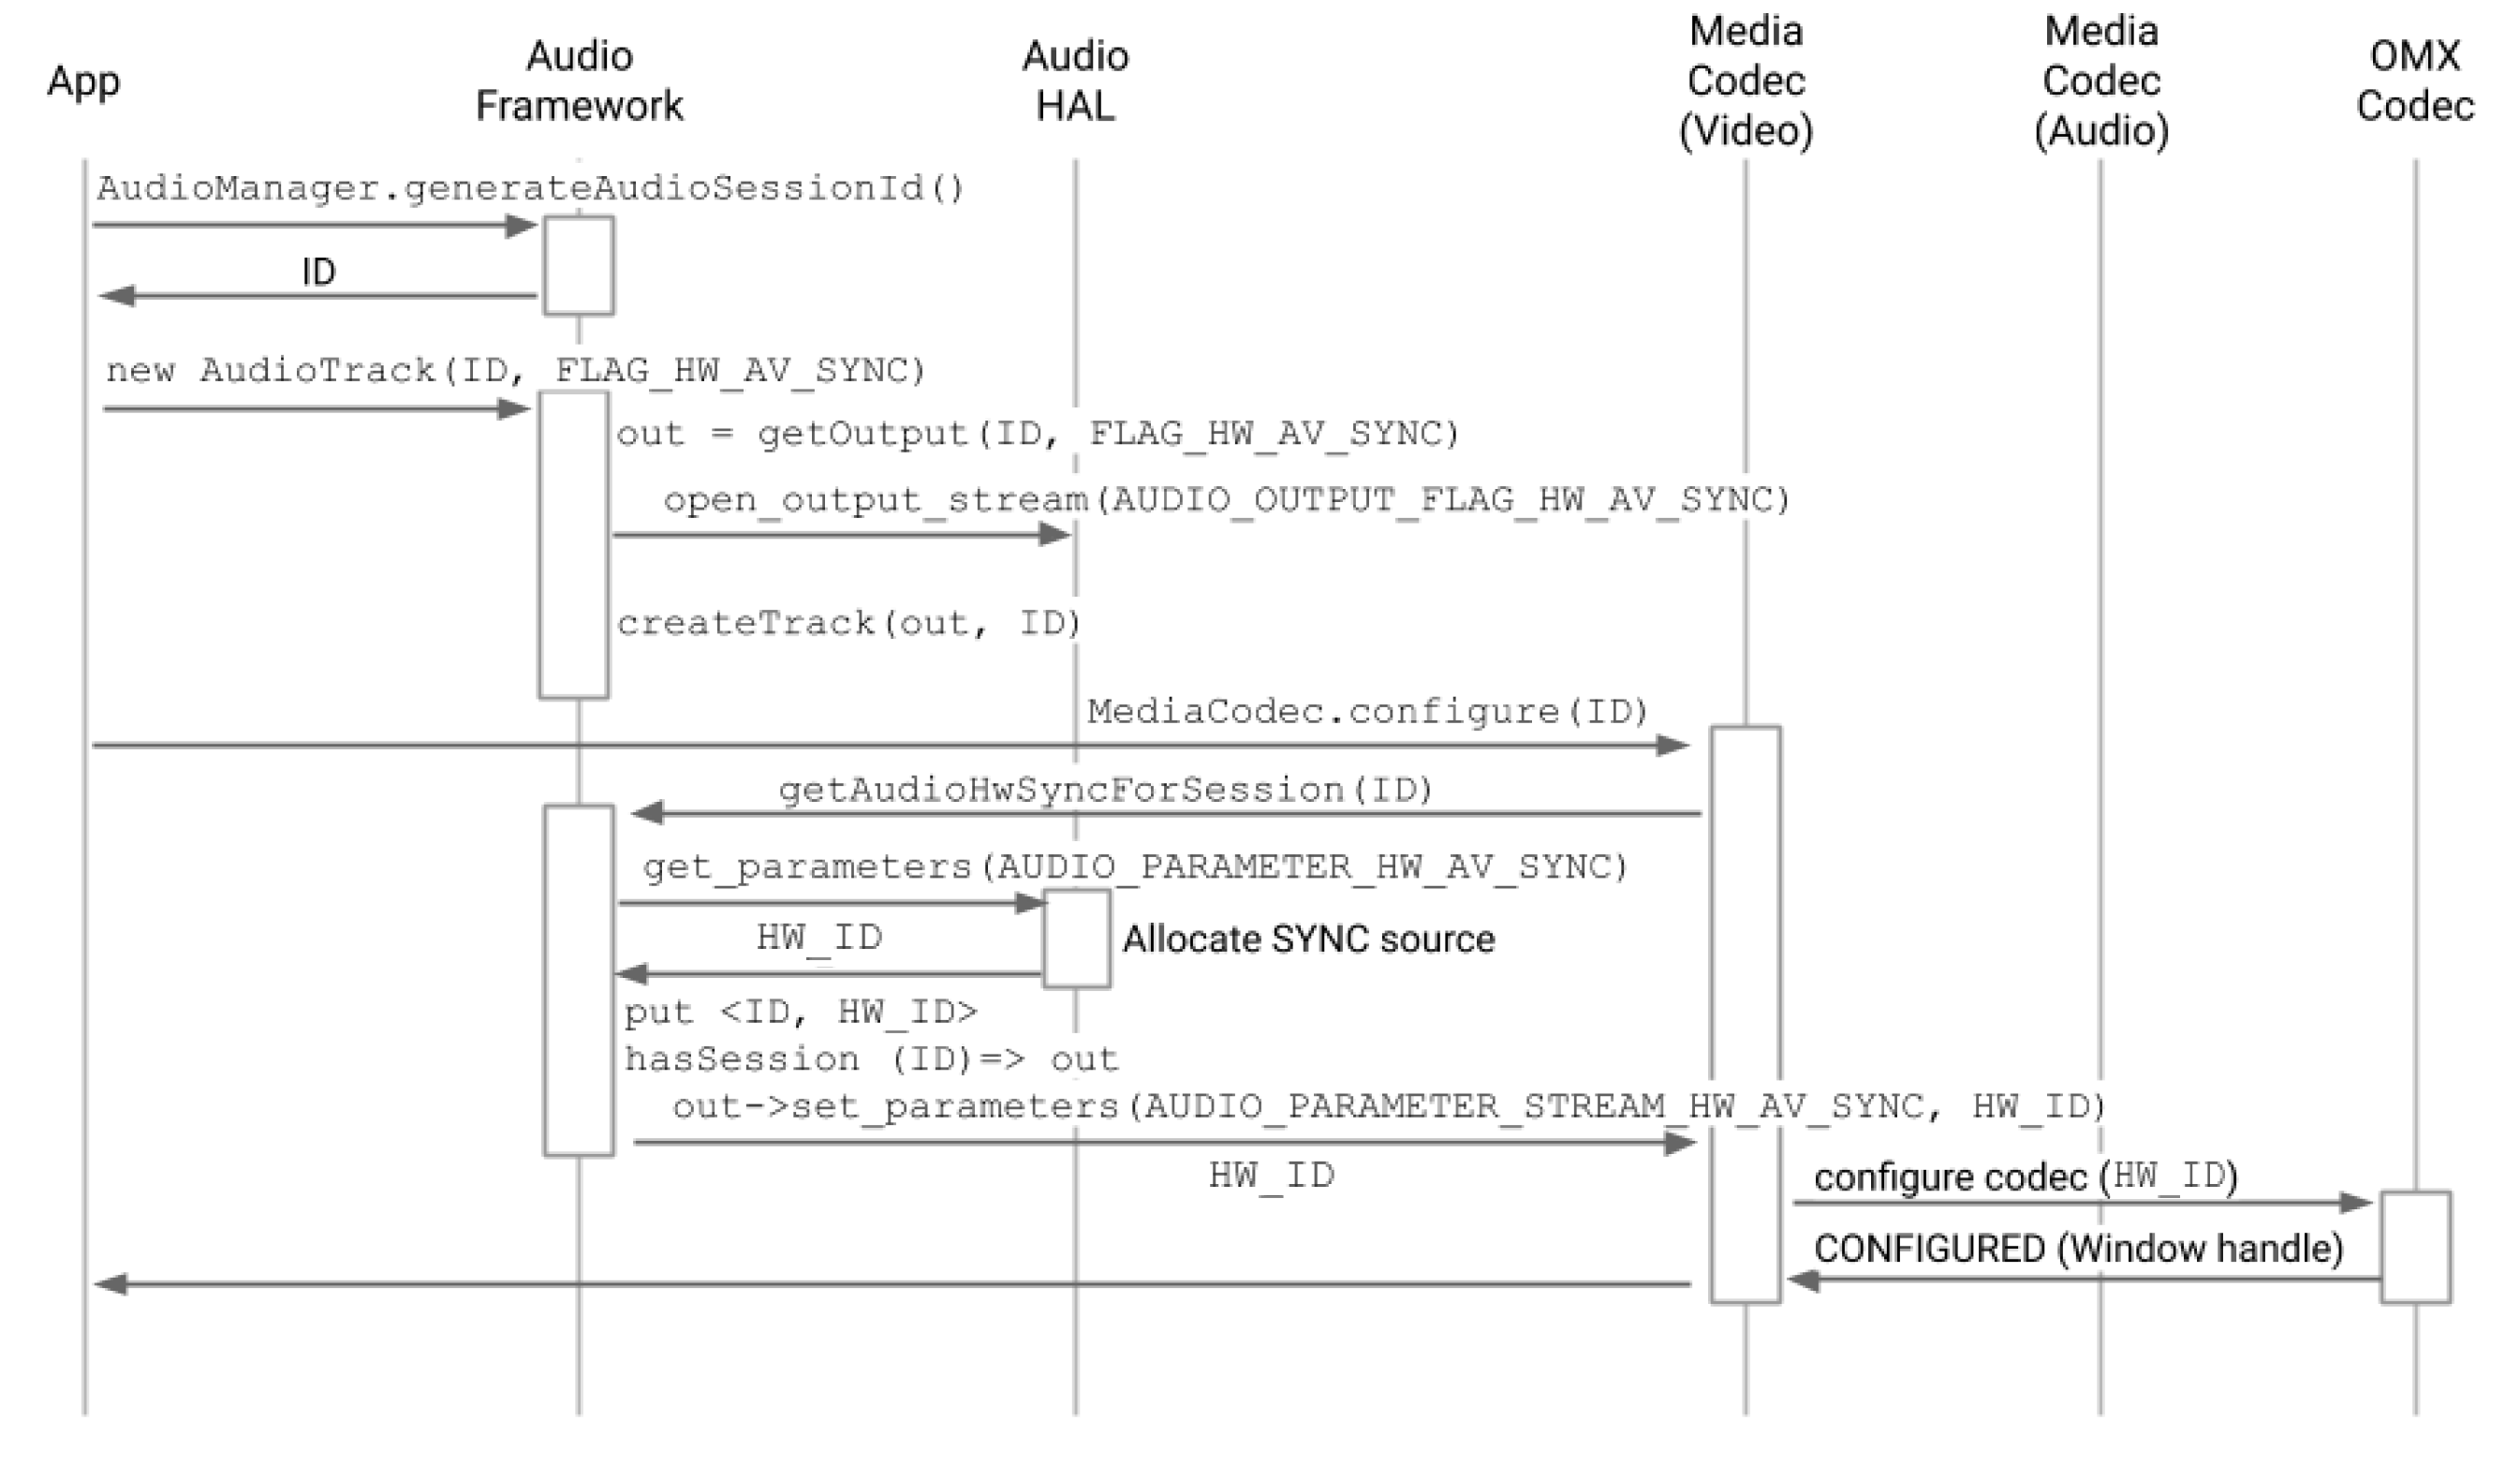 Diagrama de la pista de audio creada antes de configurar el códec